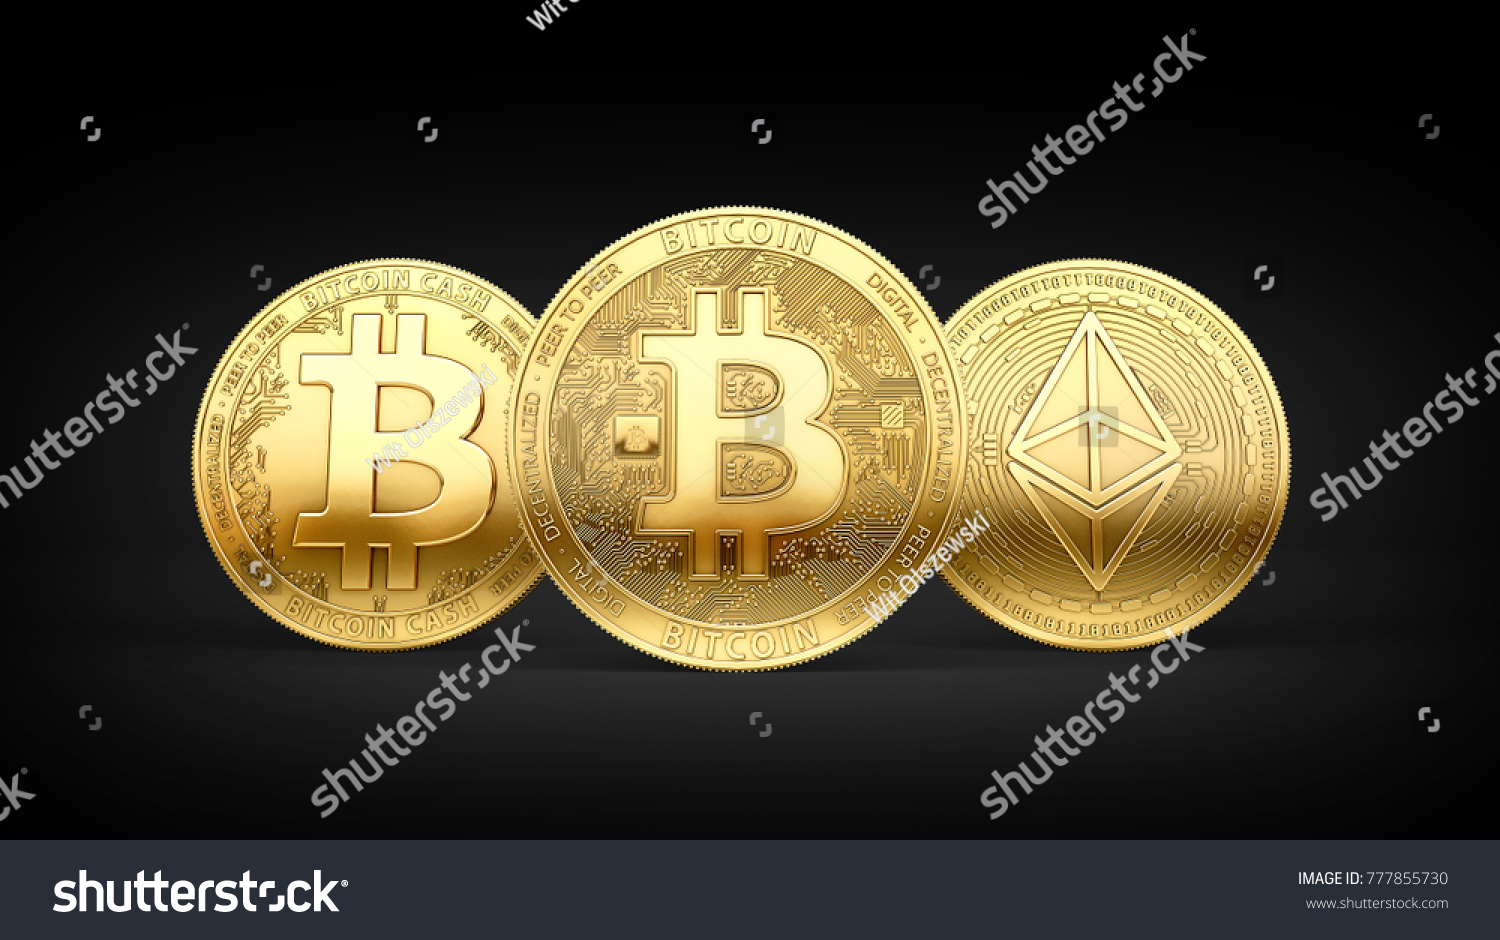 Can international student buy bitcoins как купить часть биткоина через брокера